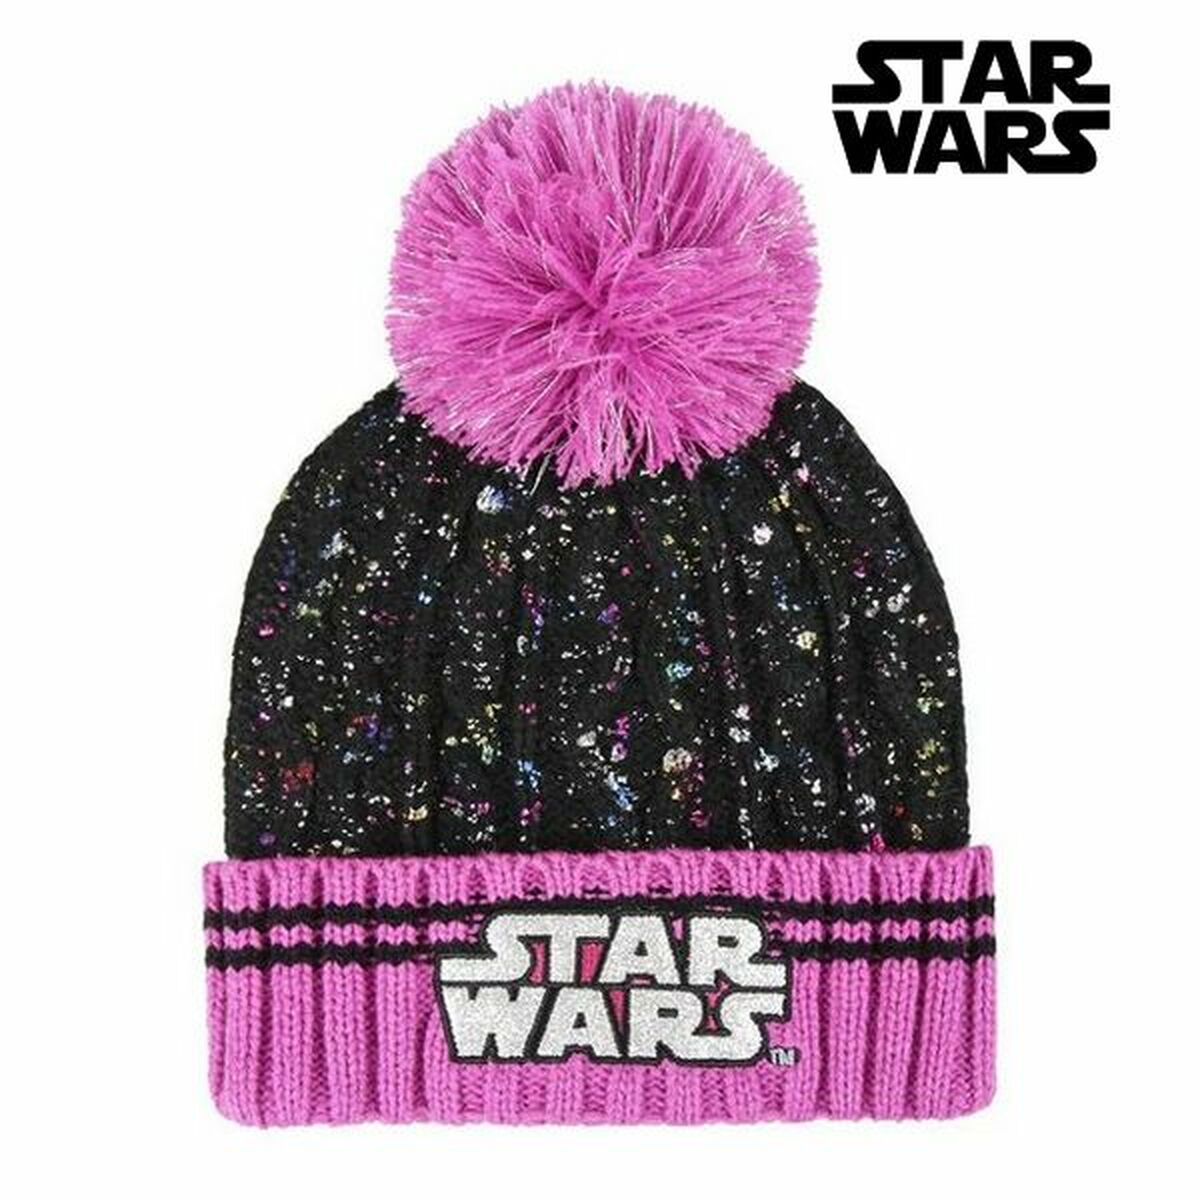 Osta tuote Lasten hattu Star Wars 2621 black (Yksi koko) verkkokaupastamme Korhone: Lelut & Asut 10% alennuksella koodilla KORHONE